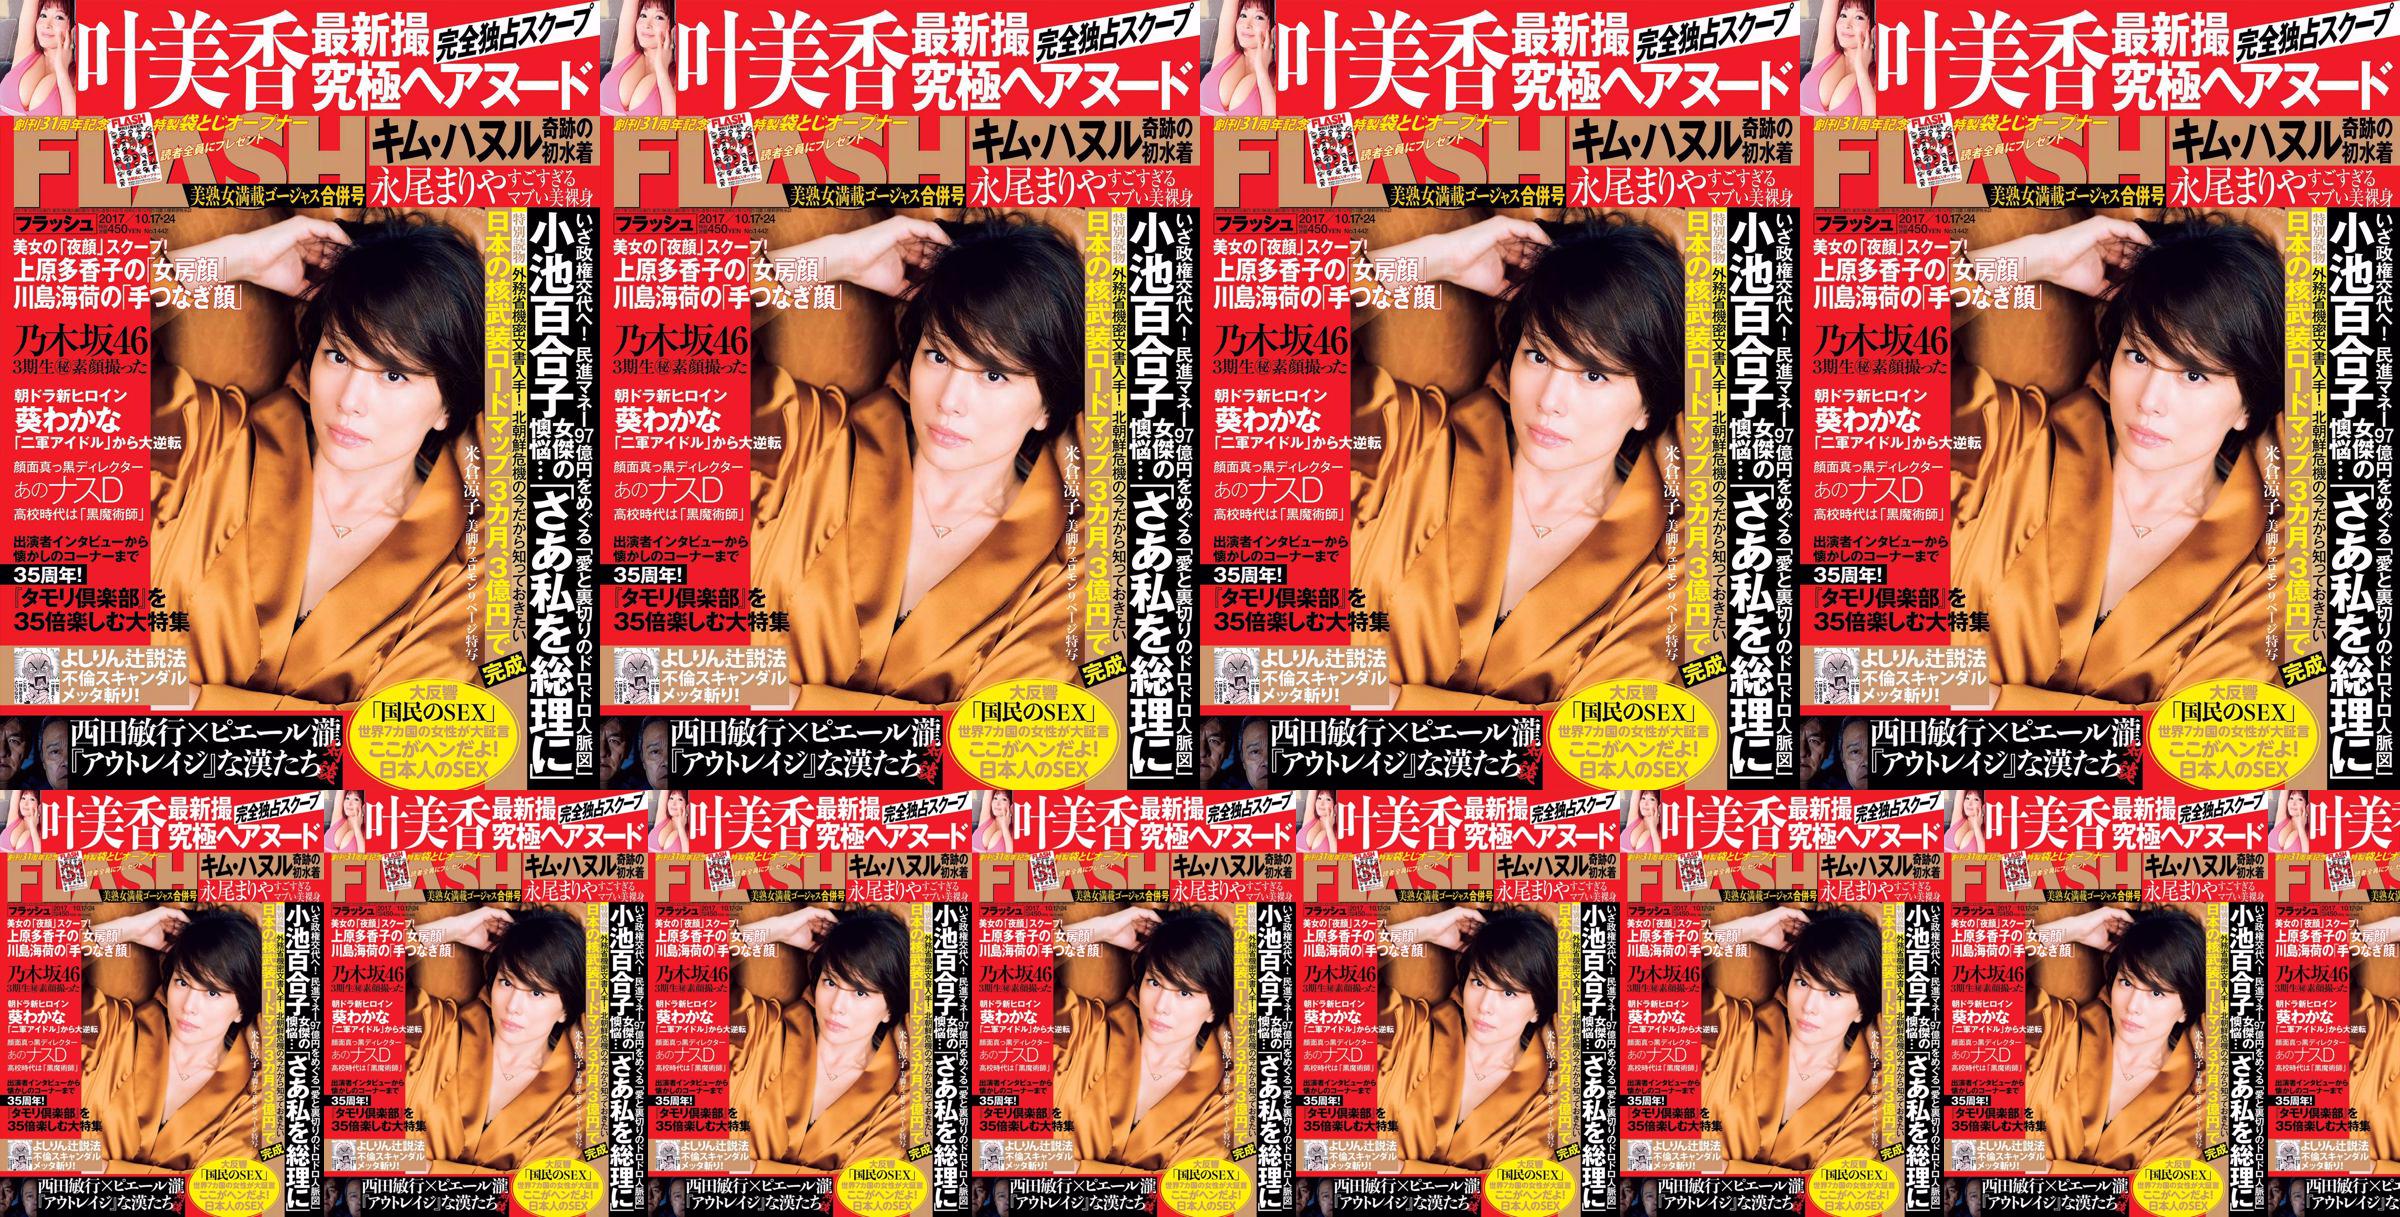 [FLASH] Yonekura Ryoko Ye Meixiang Tachibana Flower Rin Nagao Rika 2017.10.17-24 Photo Magazine No.ae74b3 Page 2